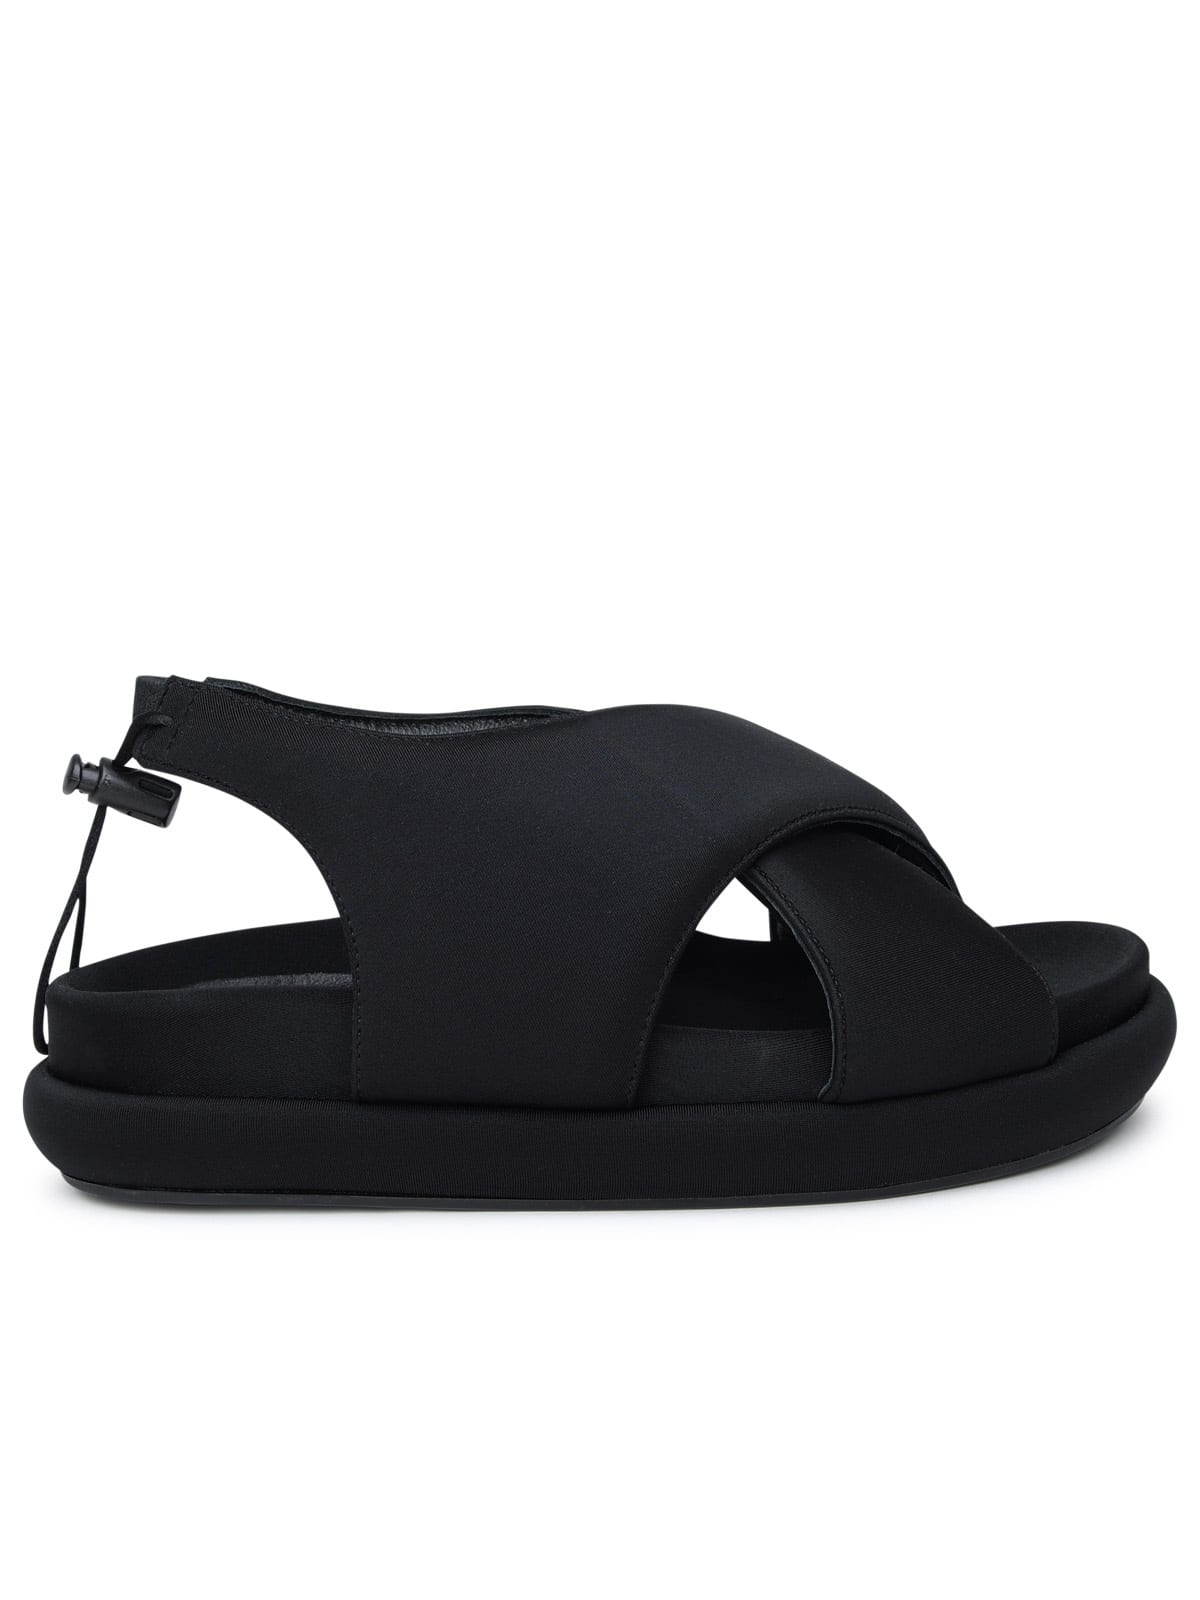 Gia X Pernille Teisbaek Gia 29 Sandals In Black Fabric